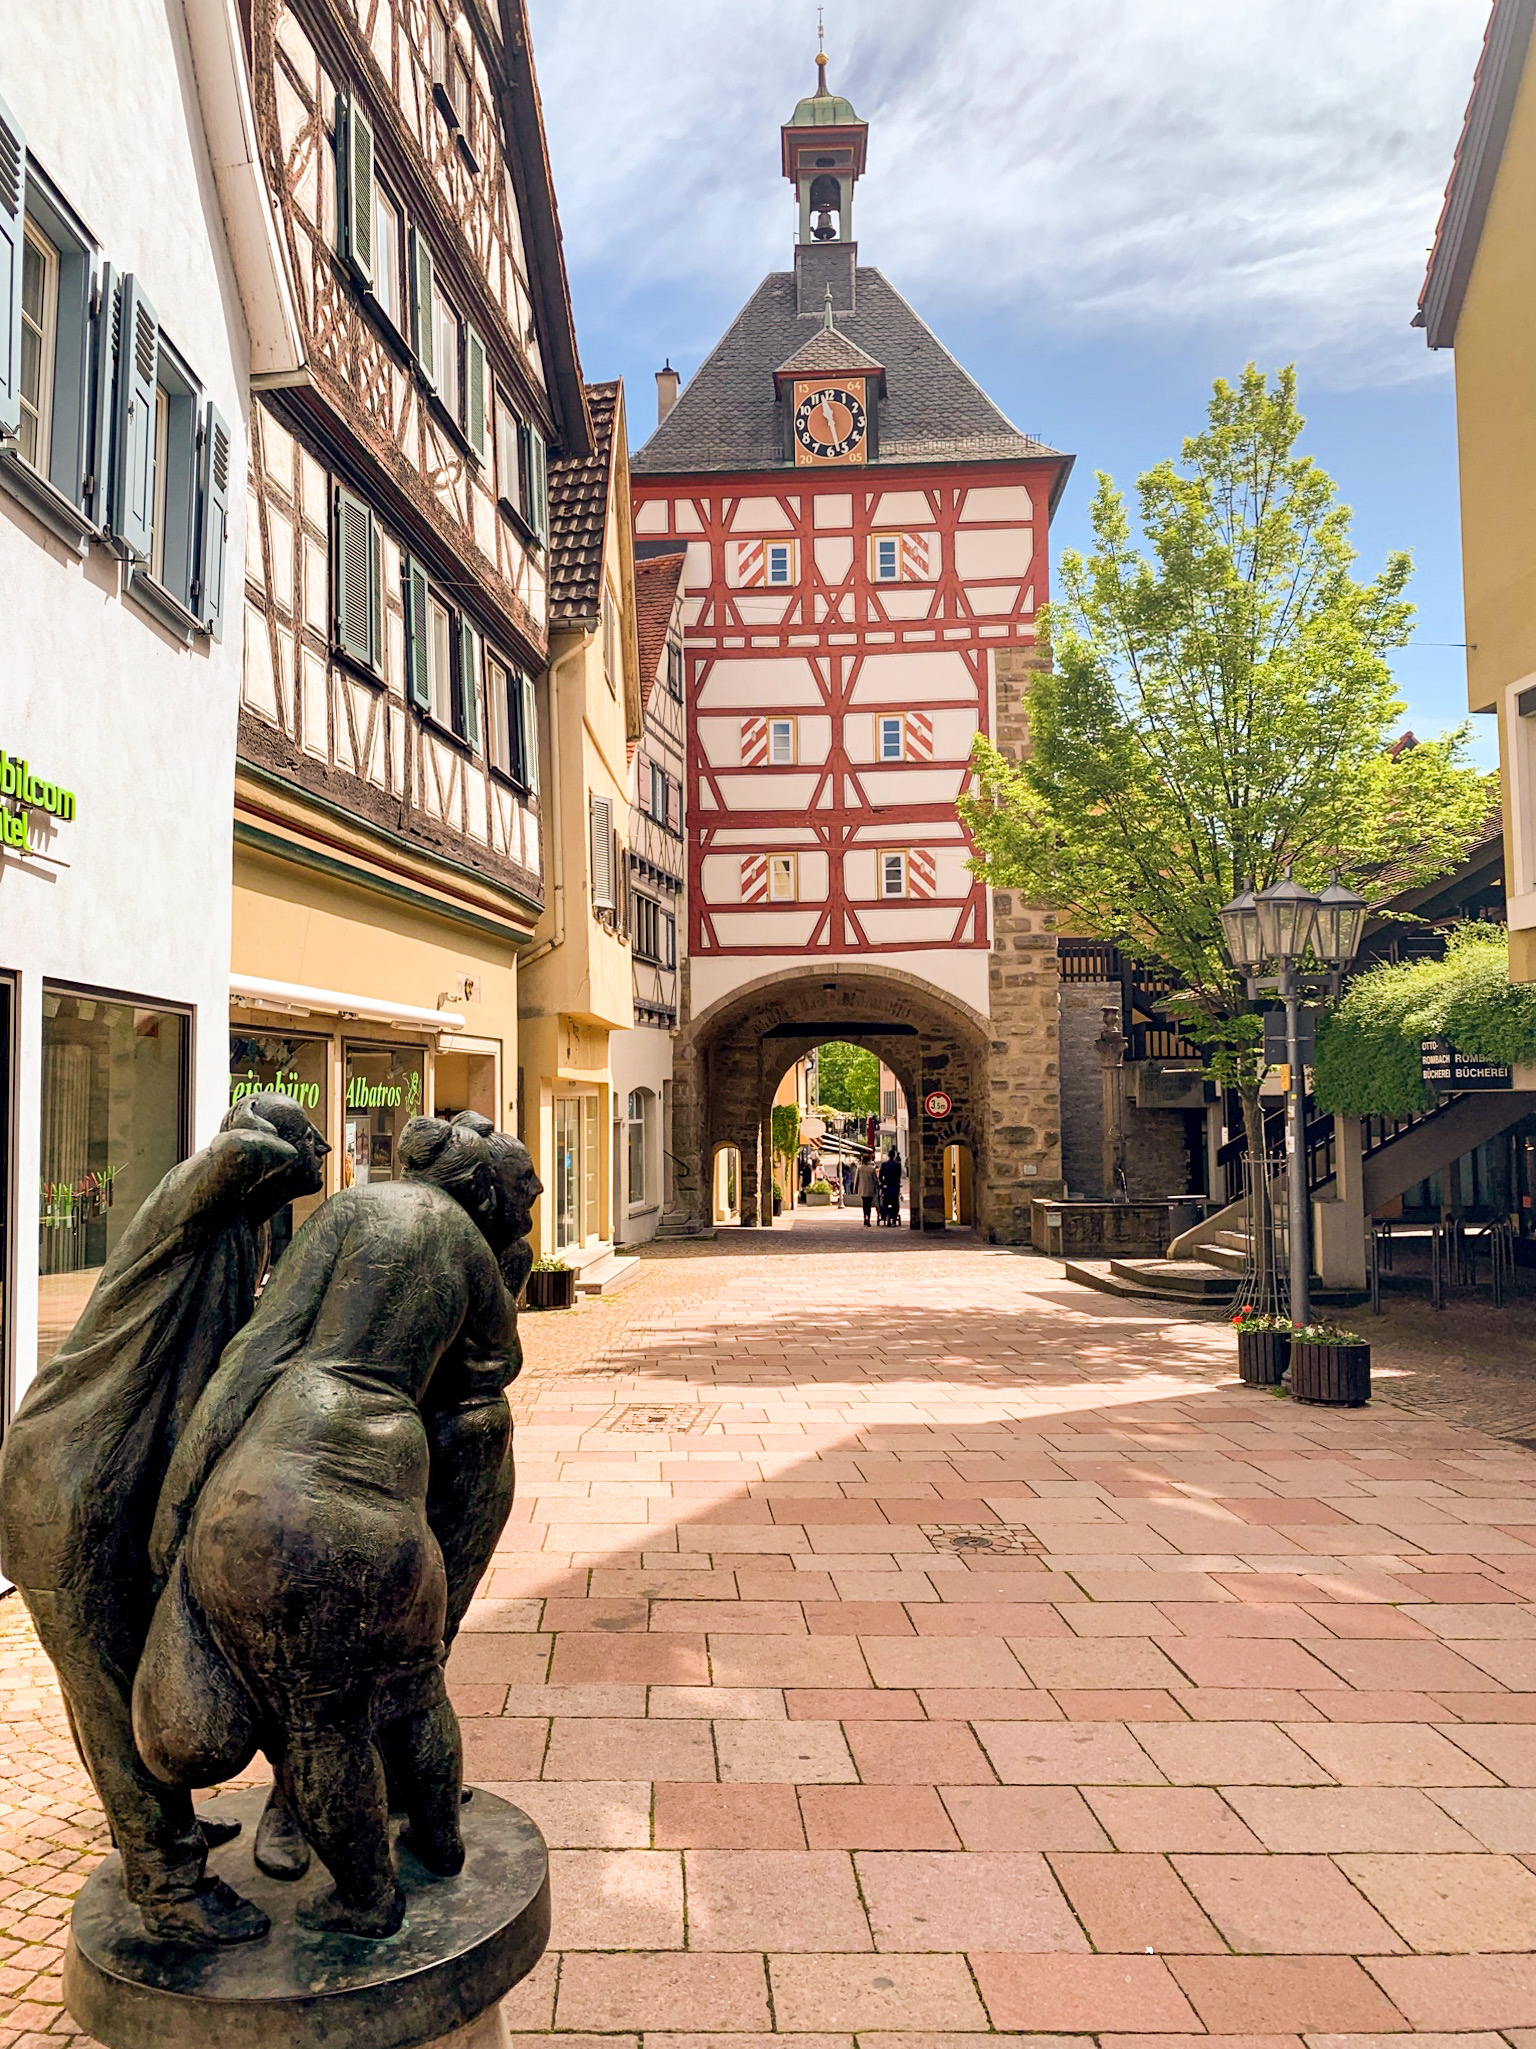 Tor zur Altstadt von Bietigheim Bissingen in Baden Württemberg mit einer Statue im Vordergrund